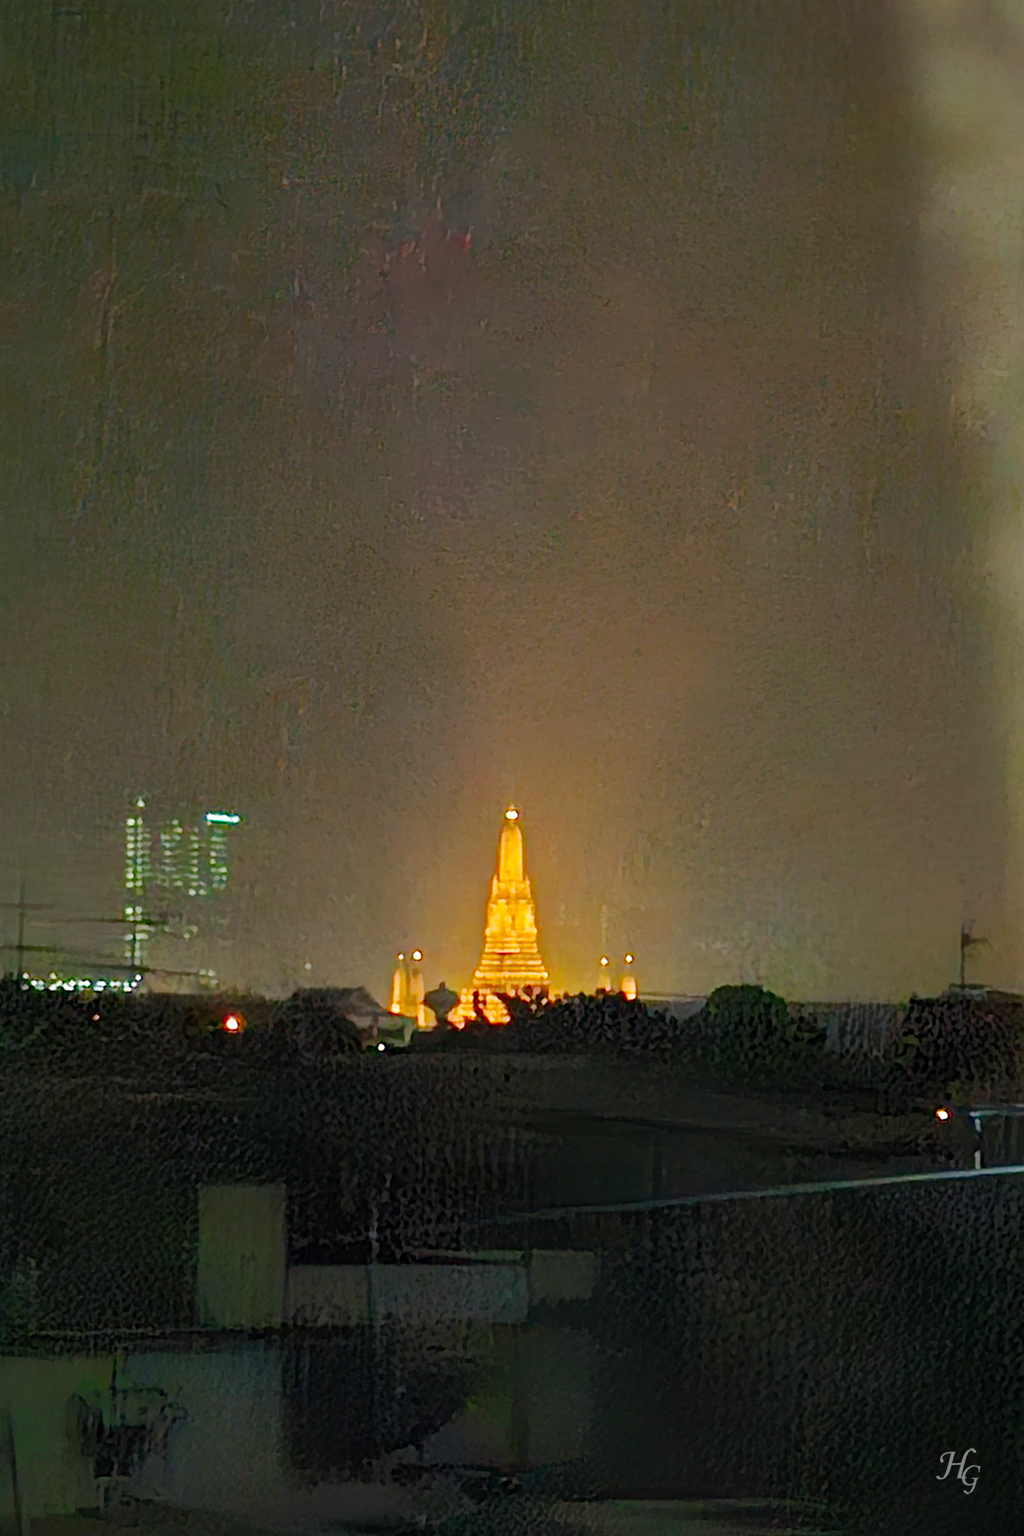 밤에 노랗게 빛나는 왓아룬 Wat Arun